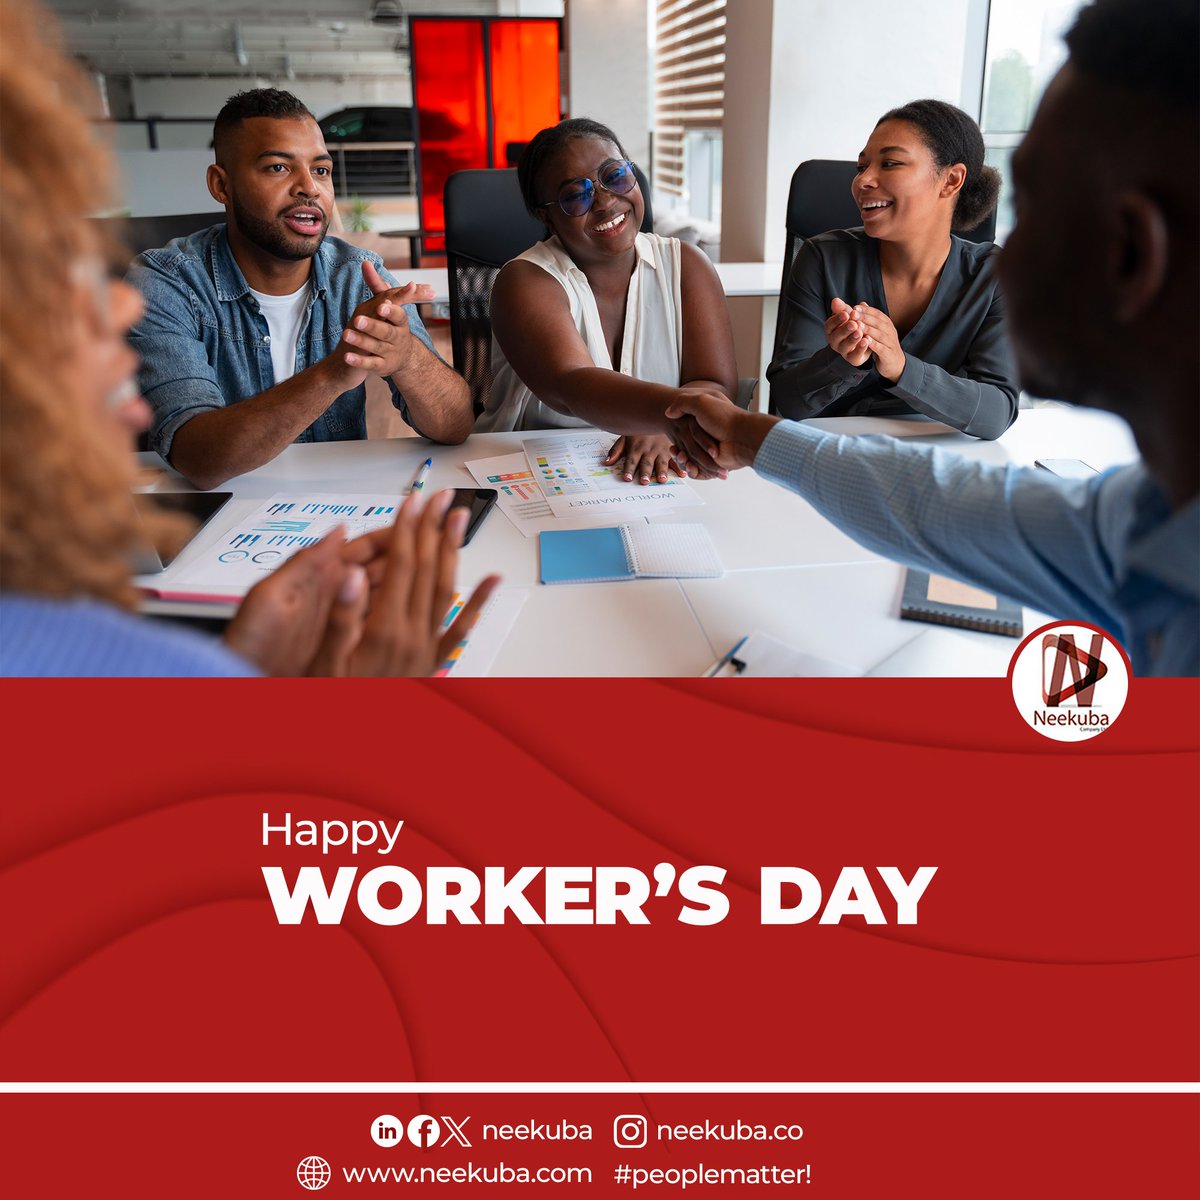 HAPPY WORKER'S DAY

#neekuba #peoplematter #WorkersDay